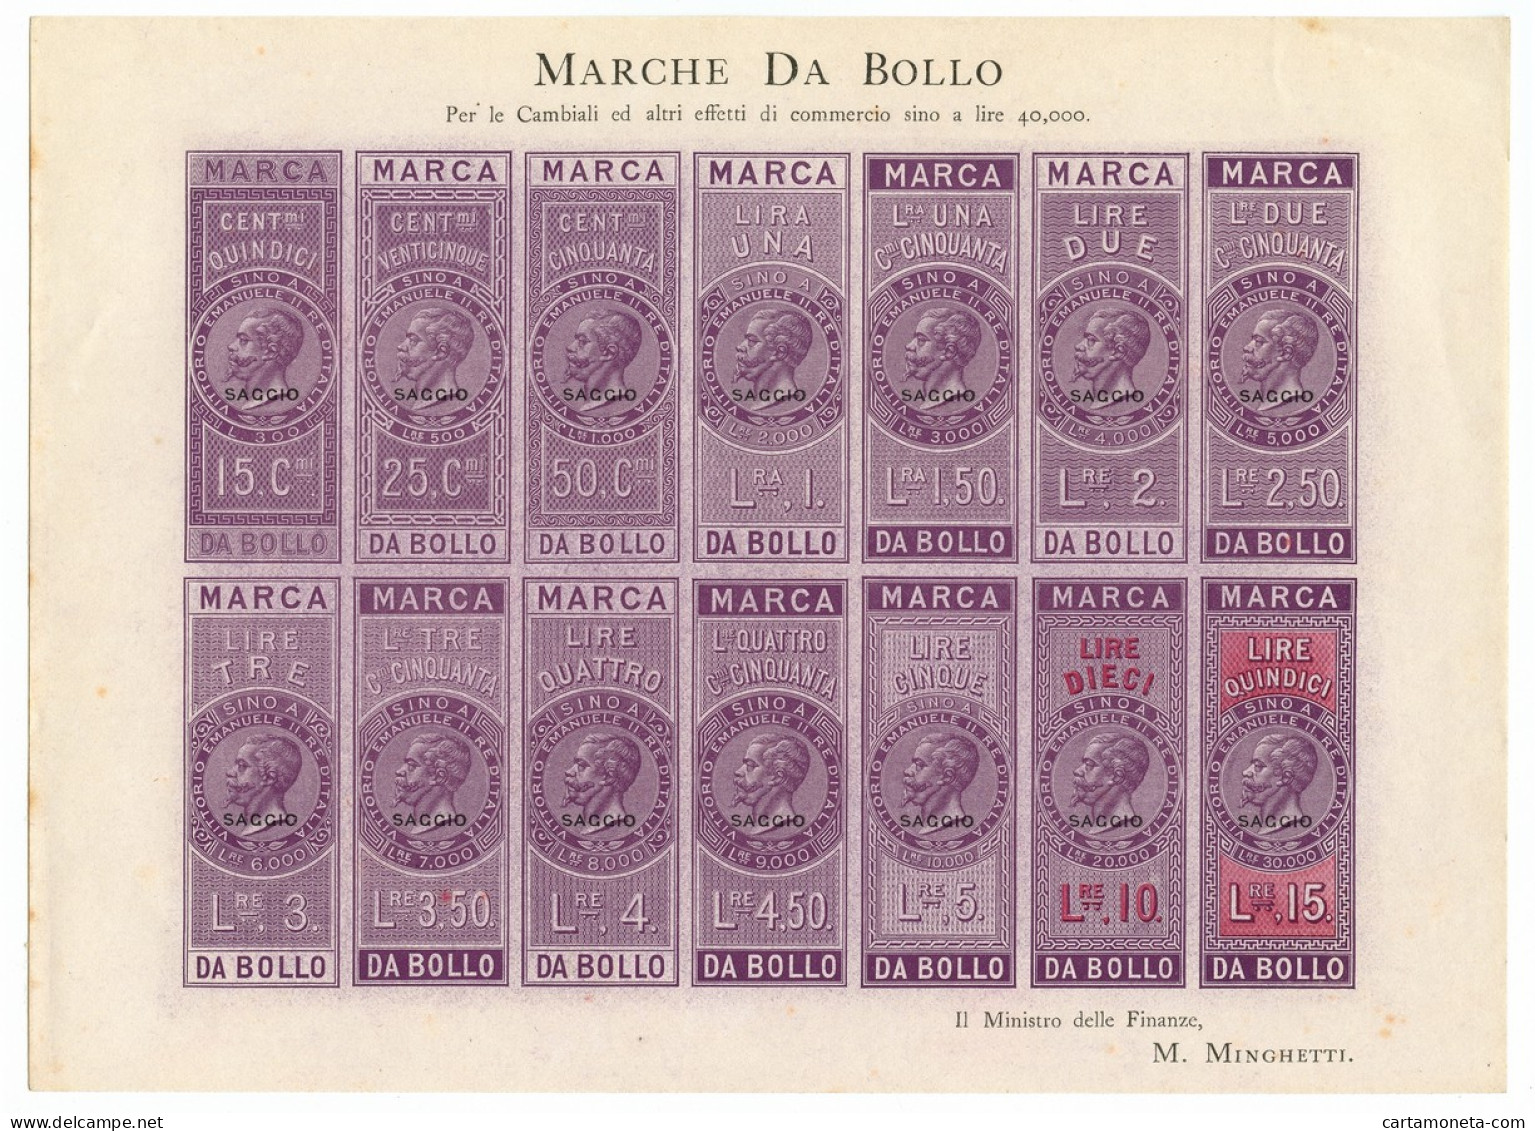 FOGLIO INTERO 14 MARCHE DA BOLLO "SAGGIO" VITTORIO EMANUELE II 1863 SUP - [ 7] Errori & Varietà